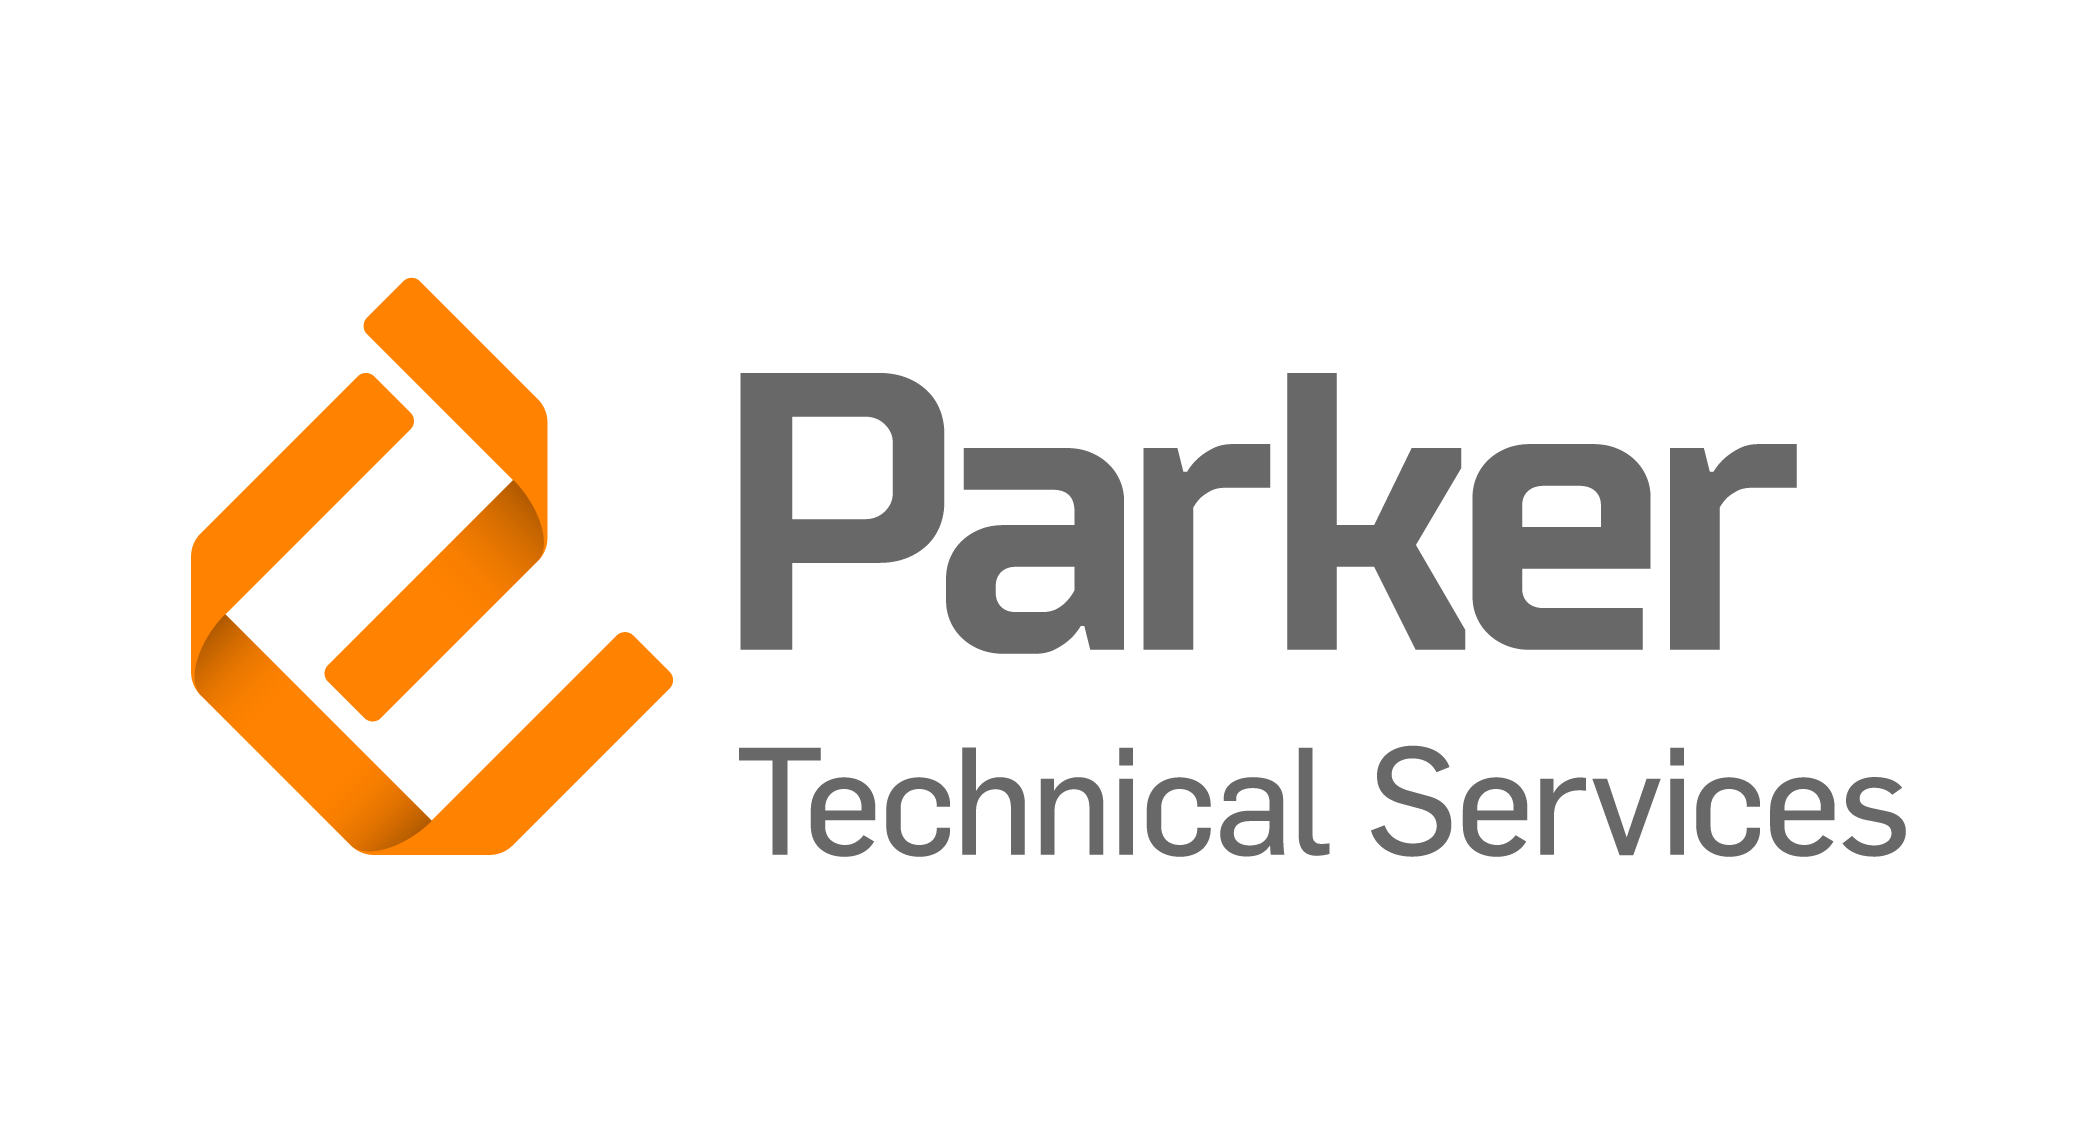 Parker Technical Services - Edwin James Group